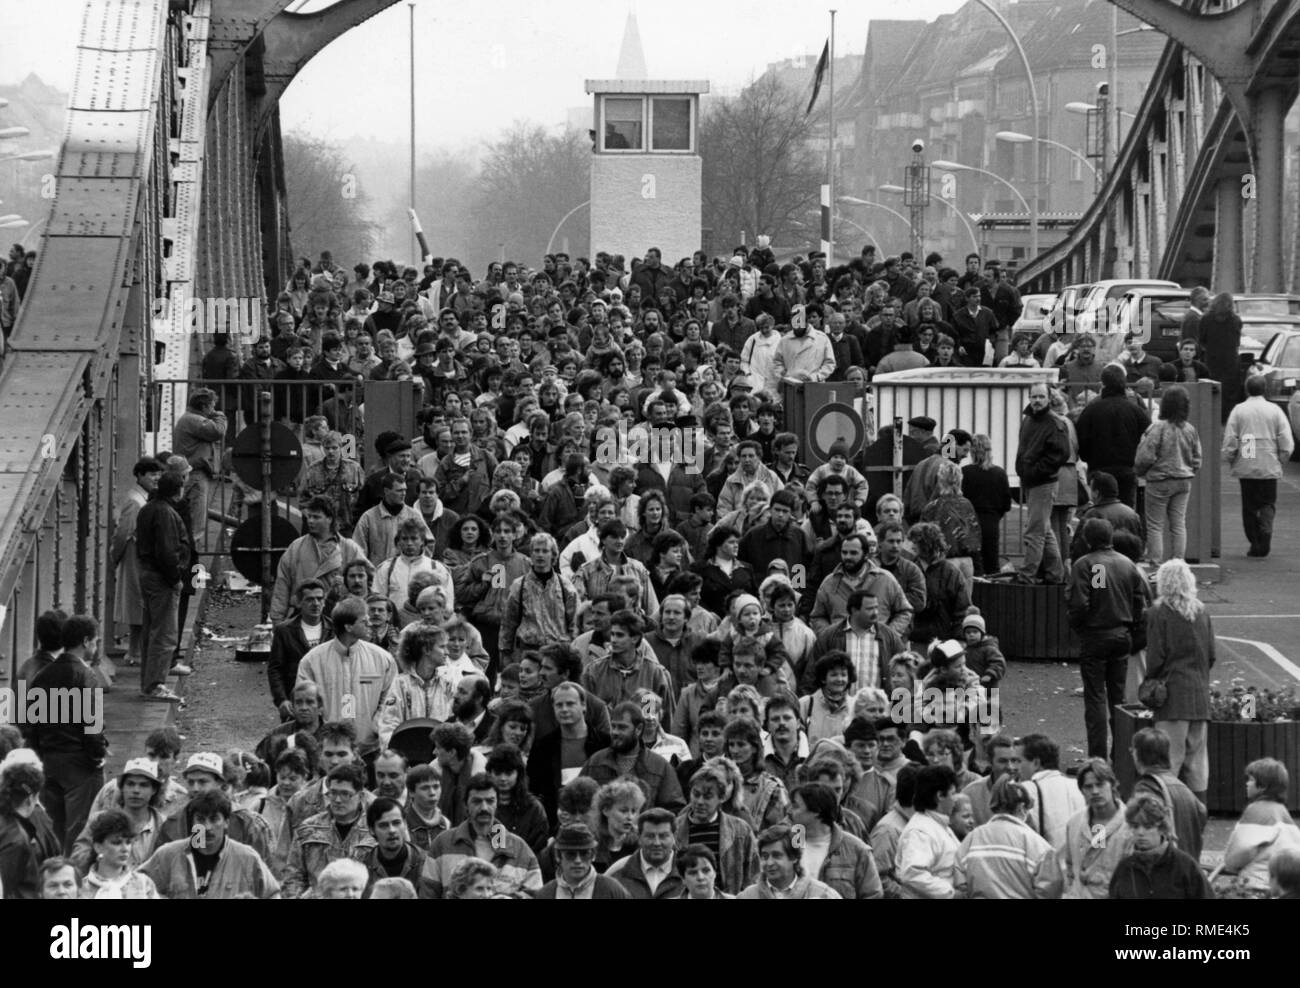 Nach dem Fall der Berliner Mauer, viele Ost-berliner kreuzte eine Grenze Checkpoint auf einer Brücke vor dem Besuch West Berlin. Stockfoto